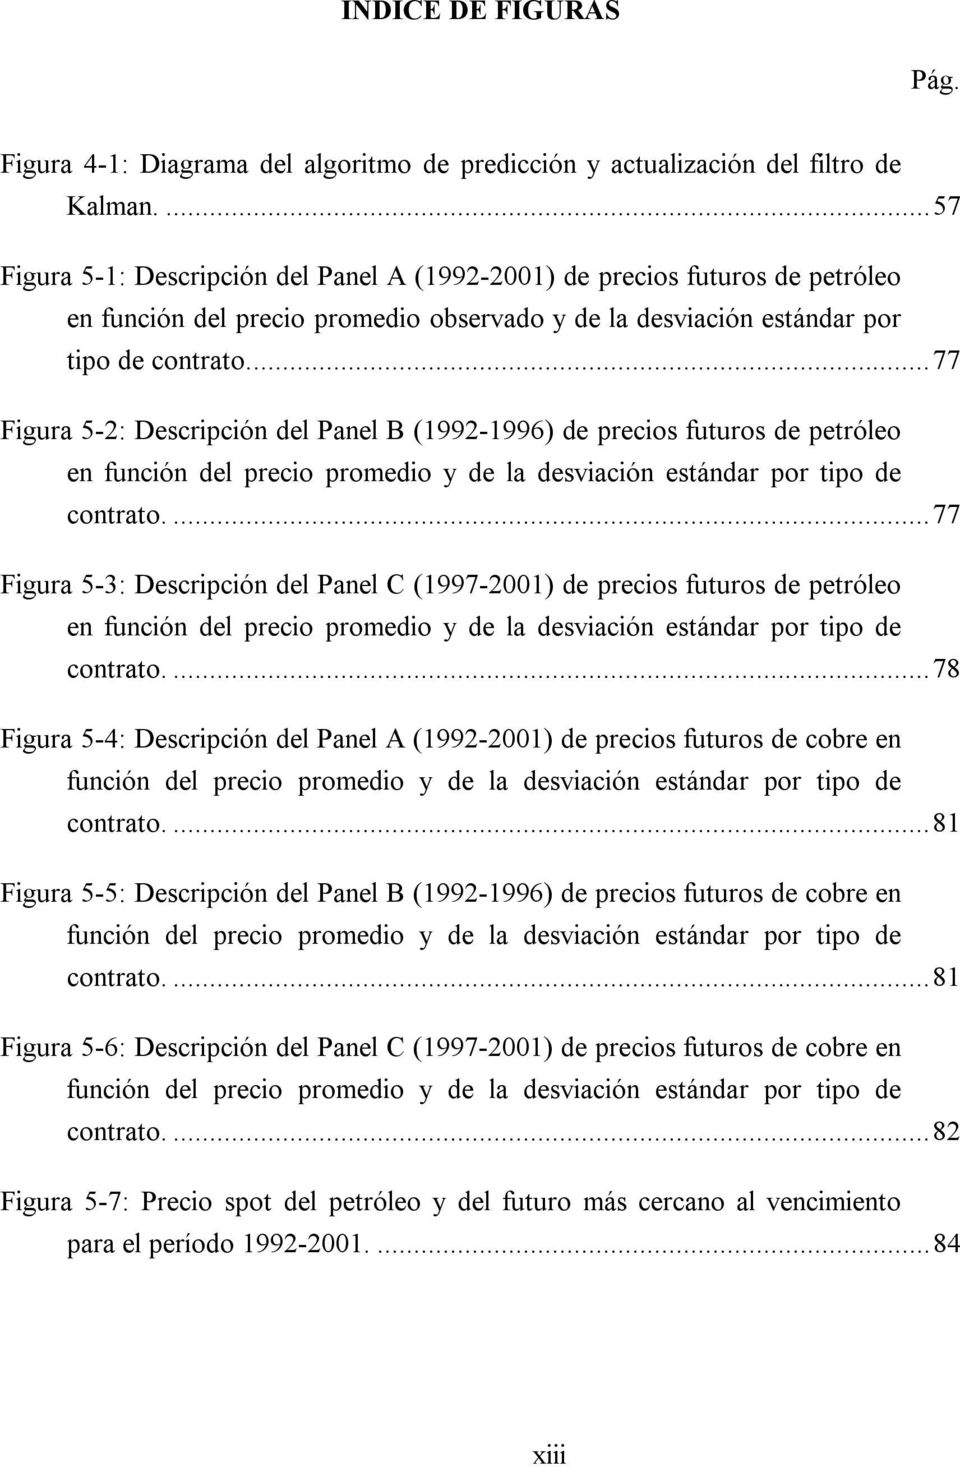 ..77 Figura 5-2: Descripción del Panel B (1992-1996) de precios fuuros de peróleo en función del precio promedio y de la desviación esándar por ipo de conrao.